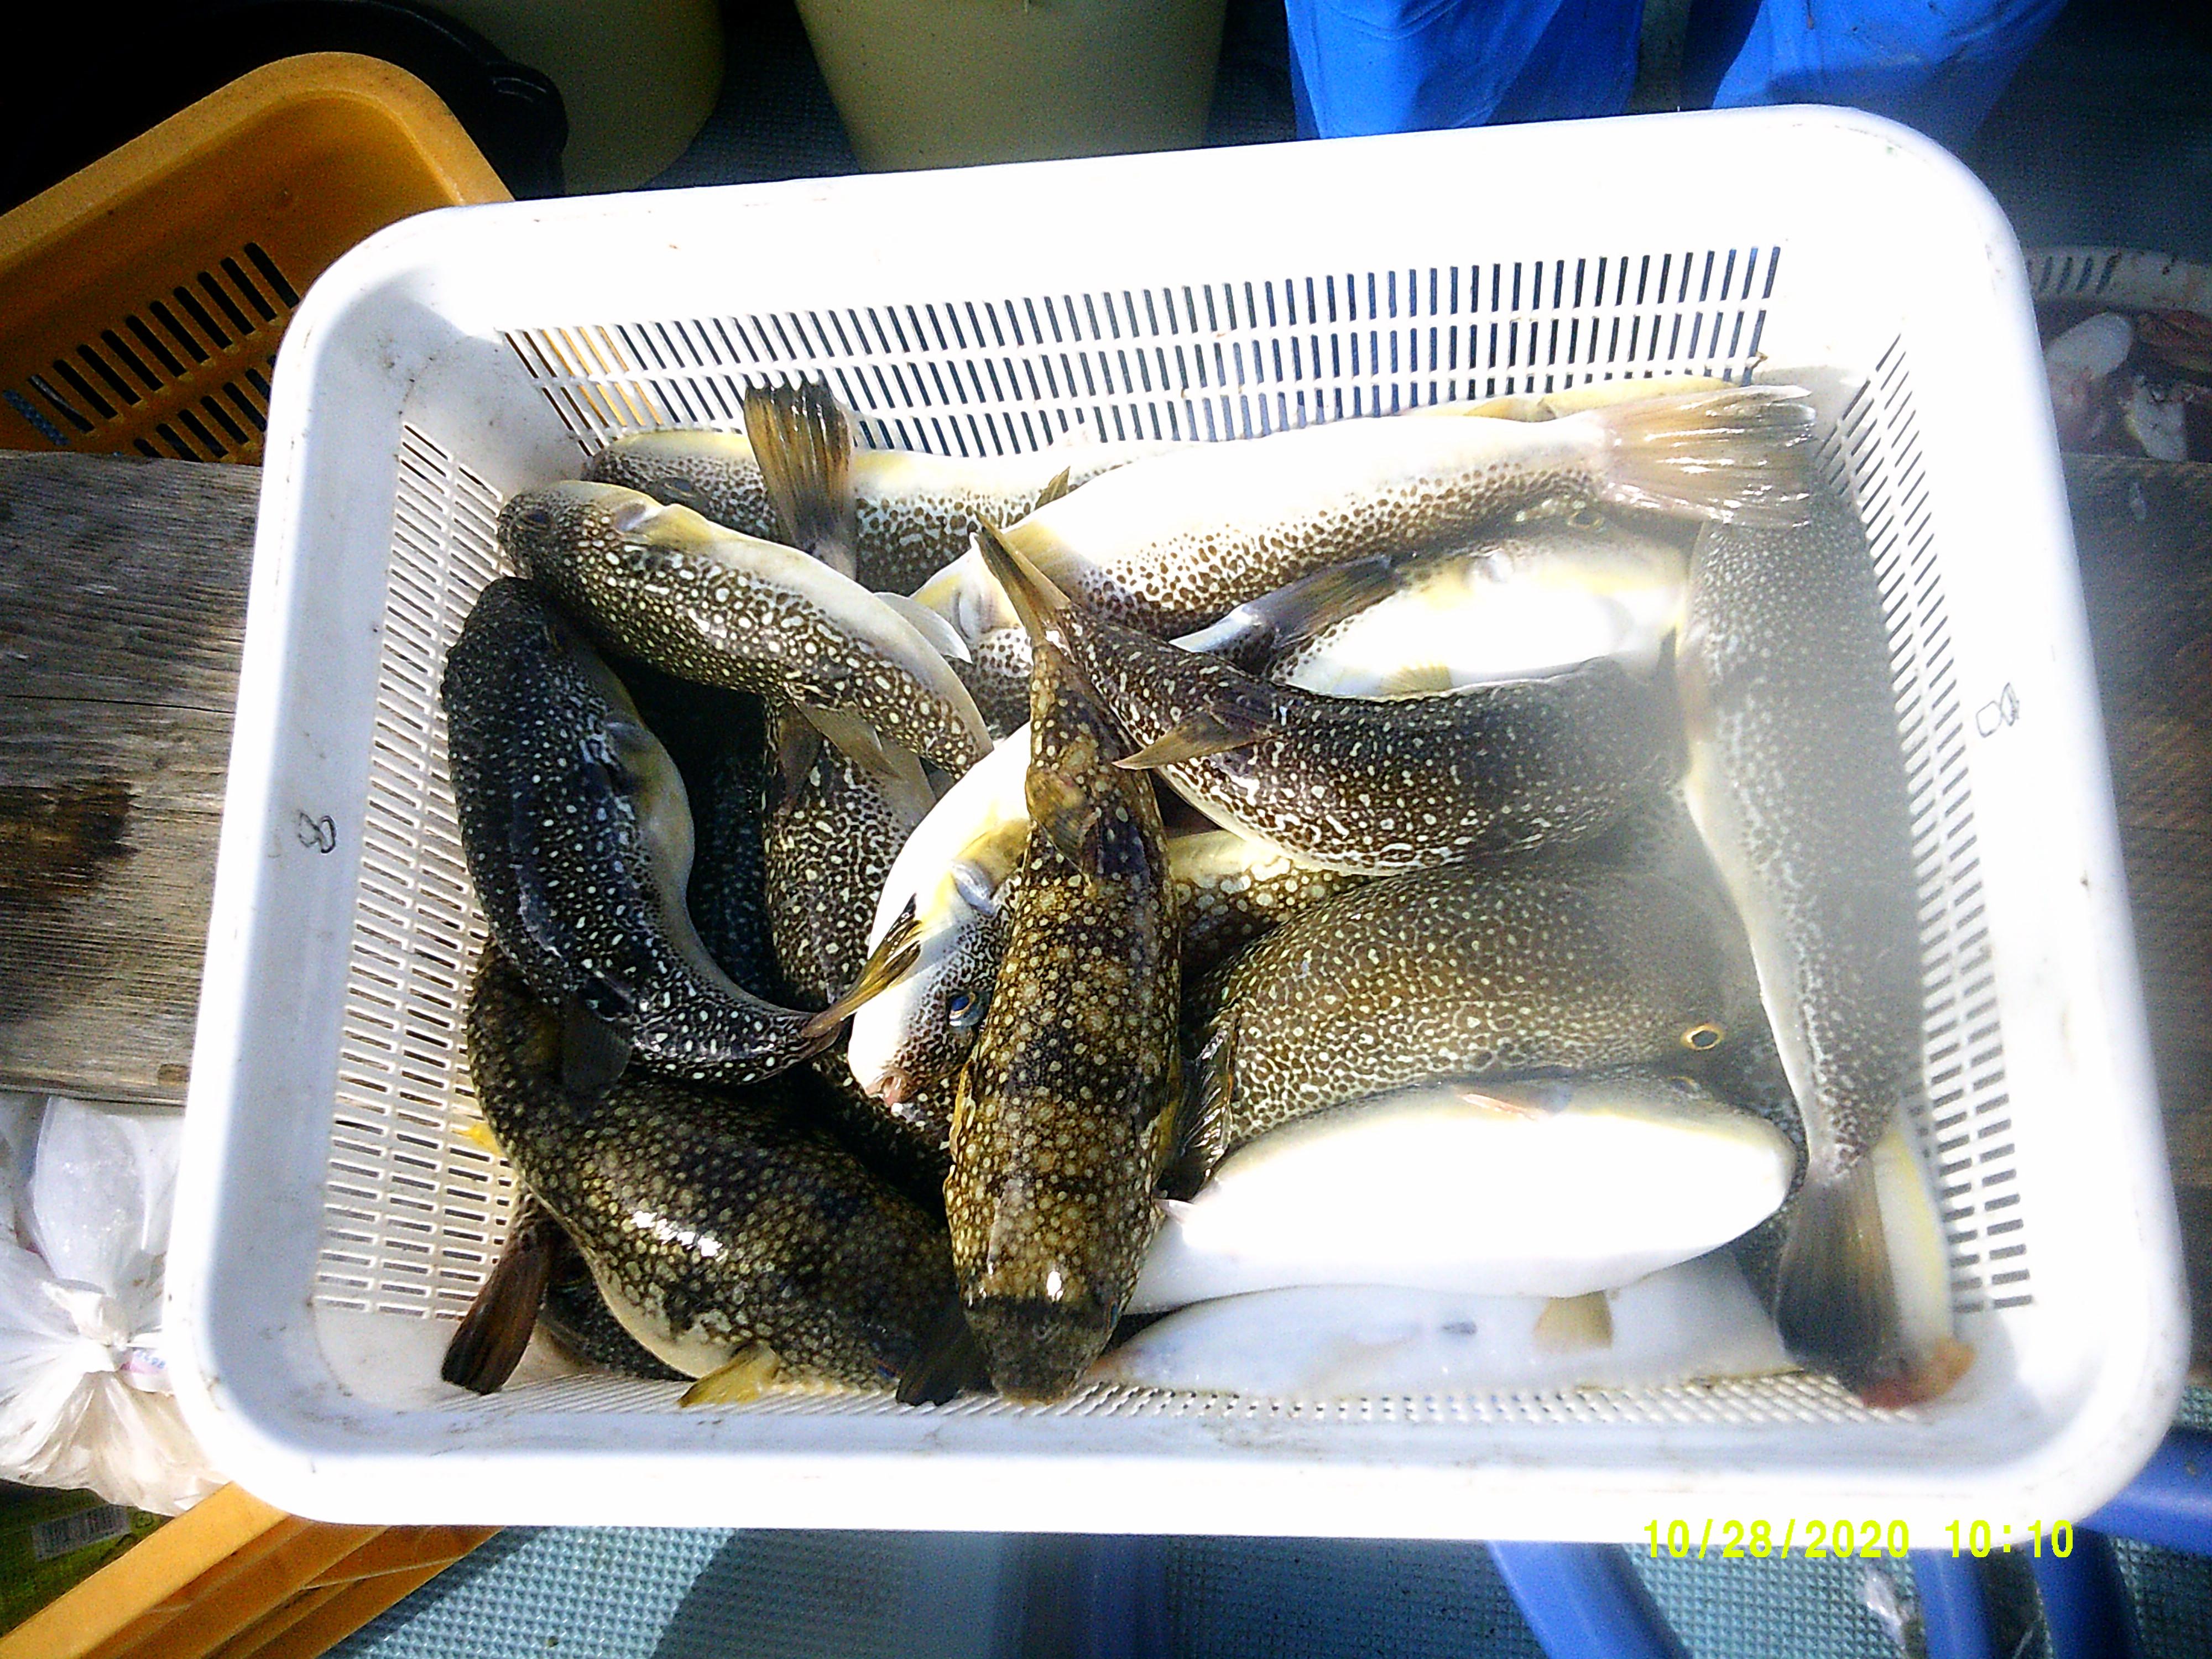 豊川店スタッフ野澤釣行 赤羽根沖フグ釣り 釣具のイシグロ 釣り情報サイト